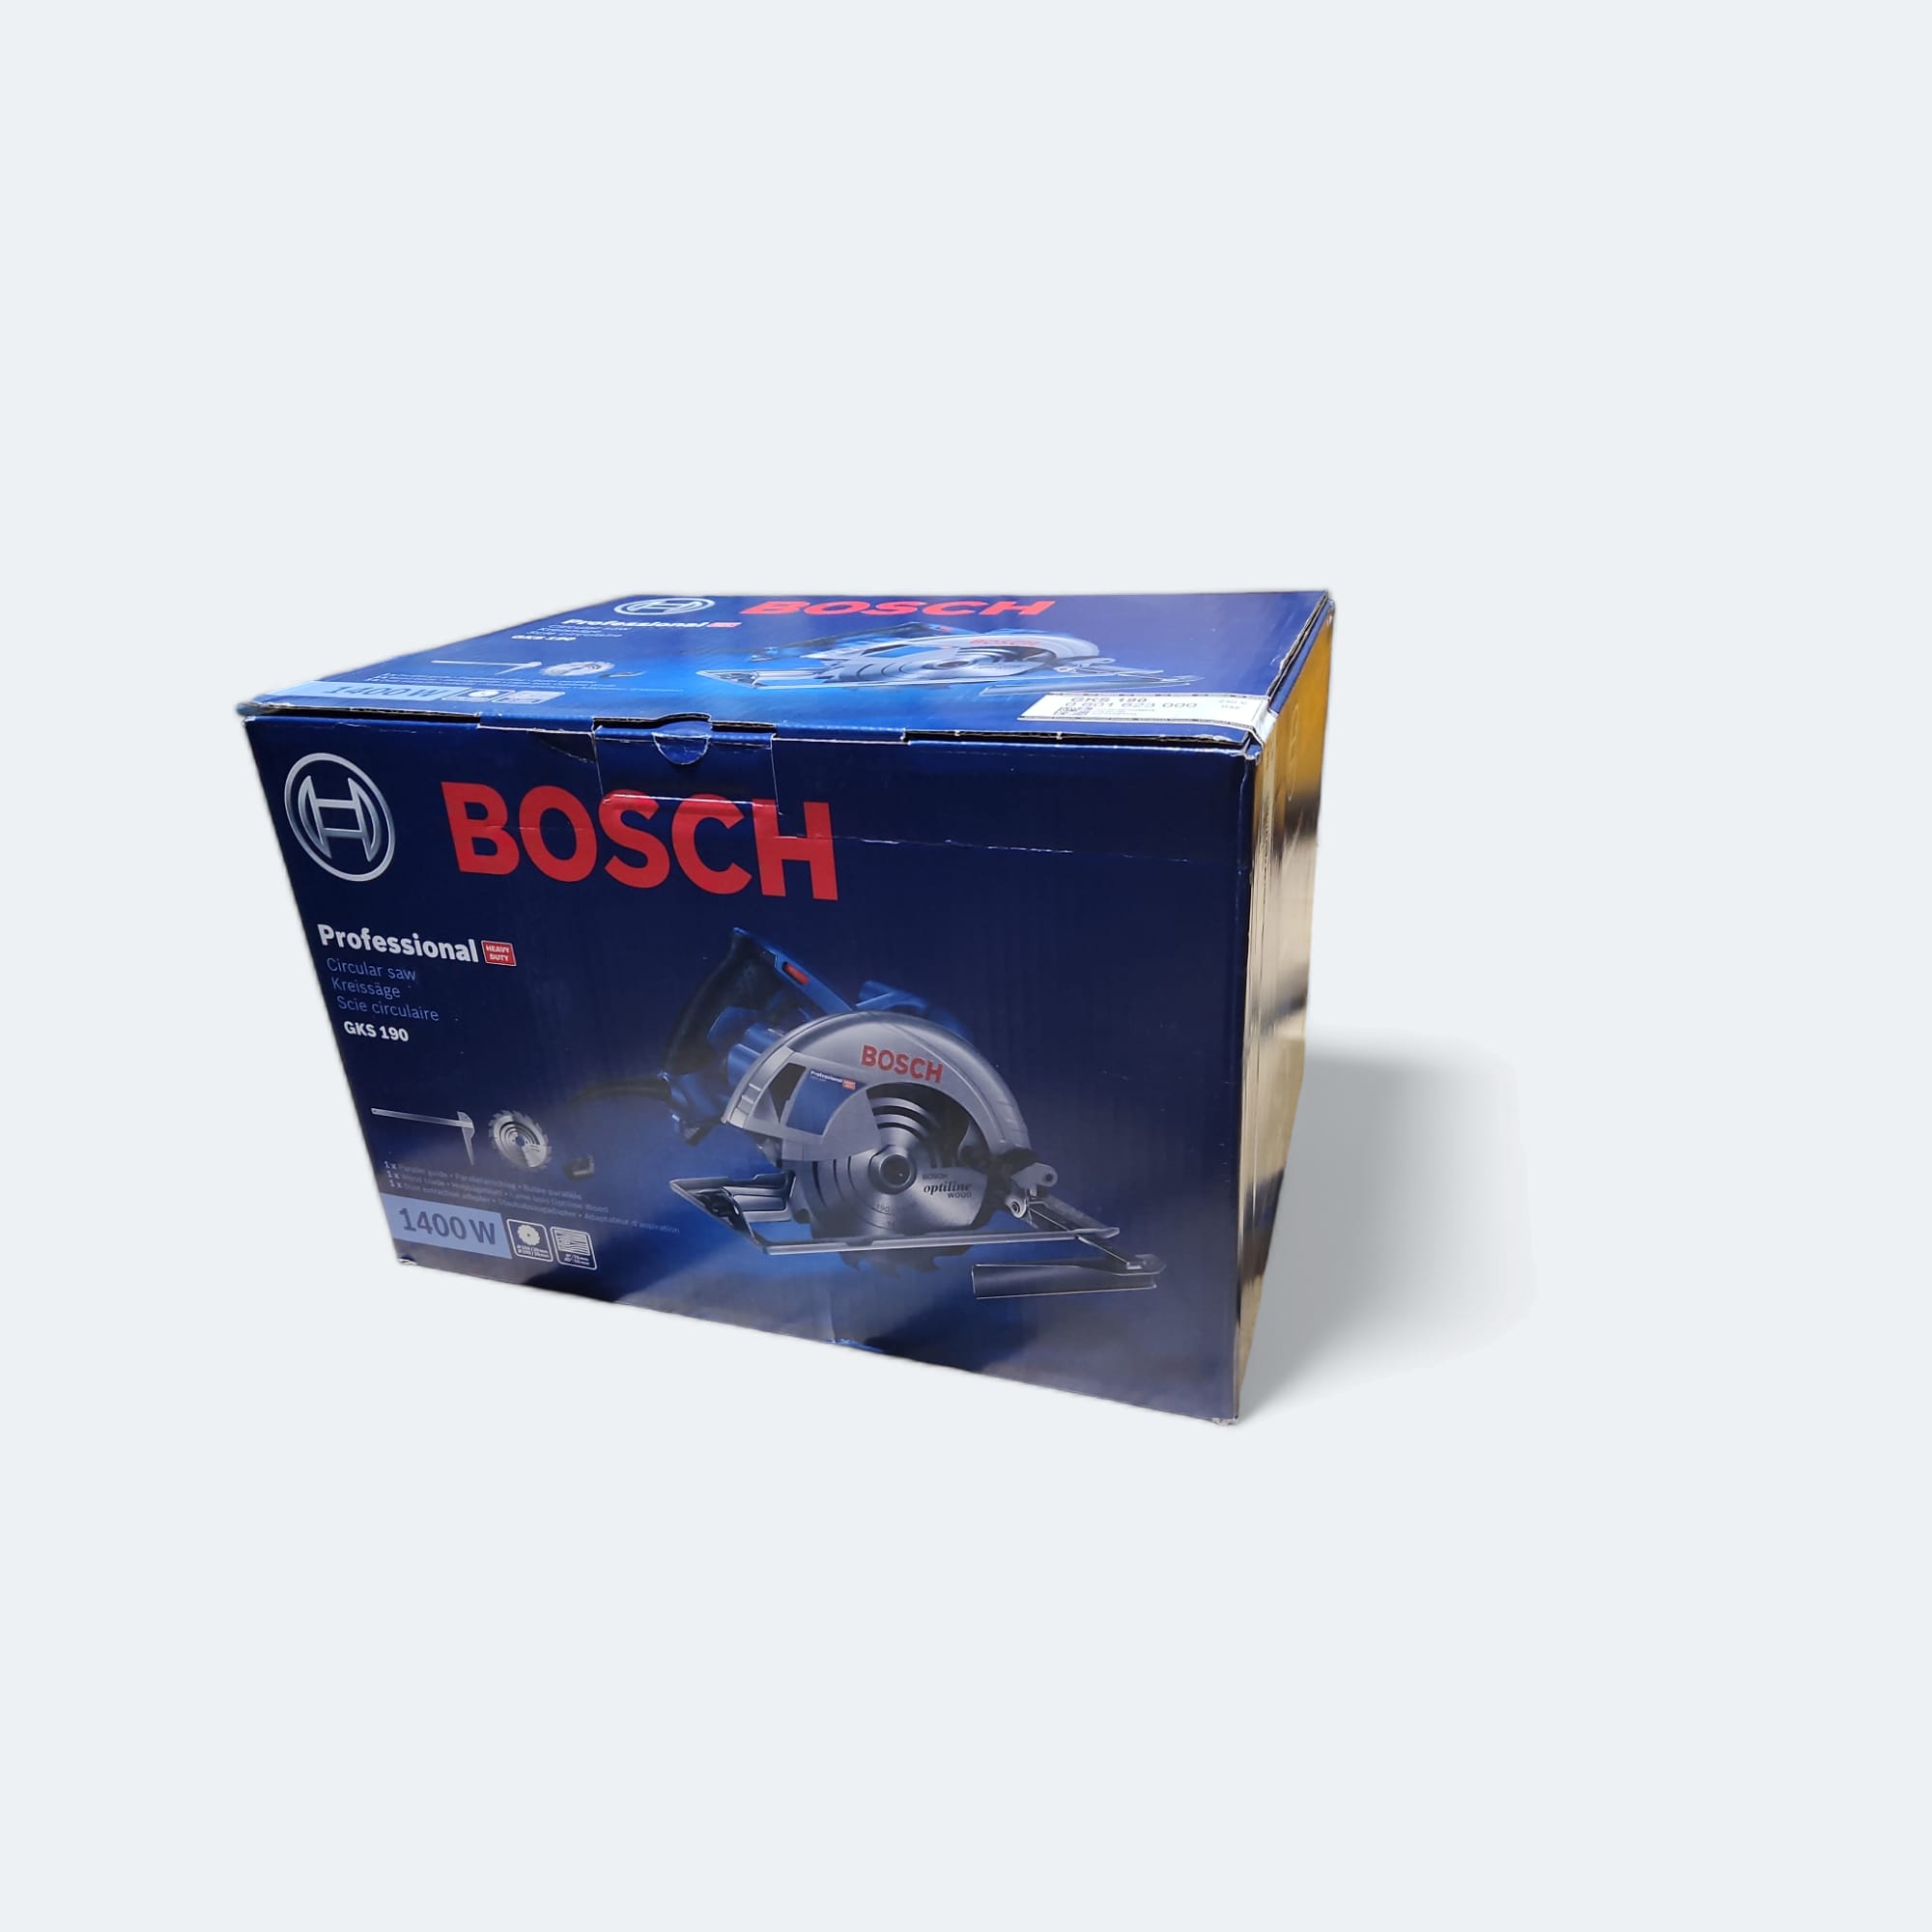 Bosch Handkreissäge GKS 190 